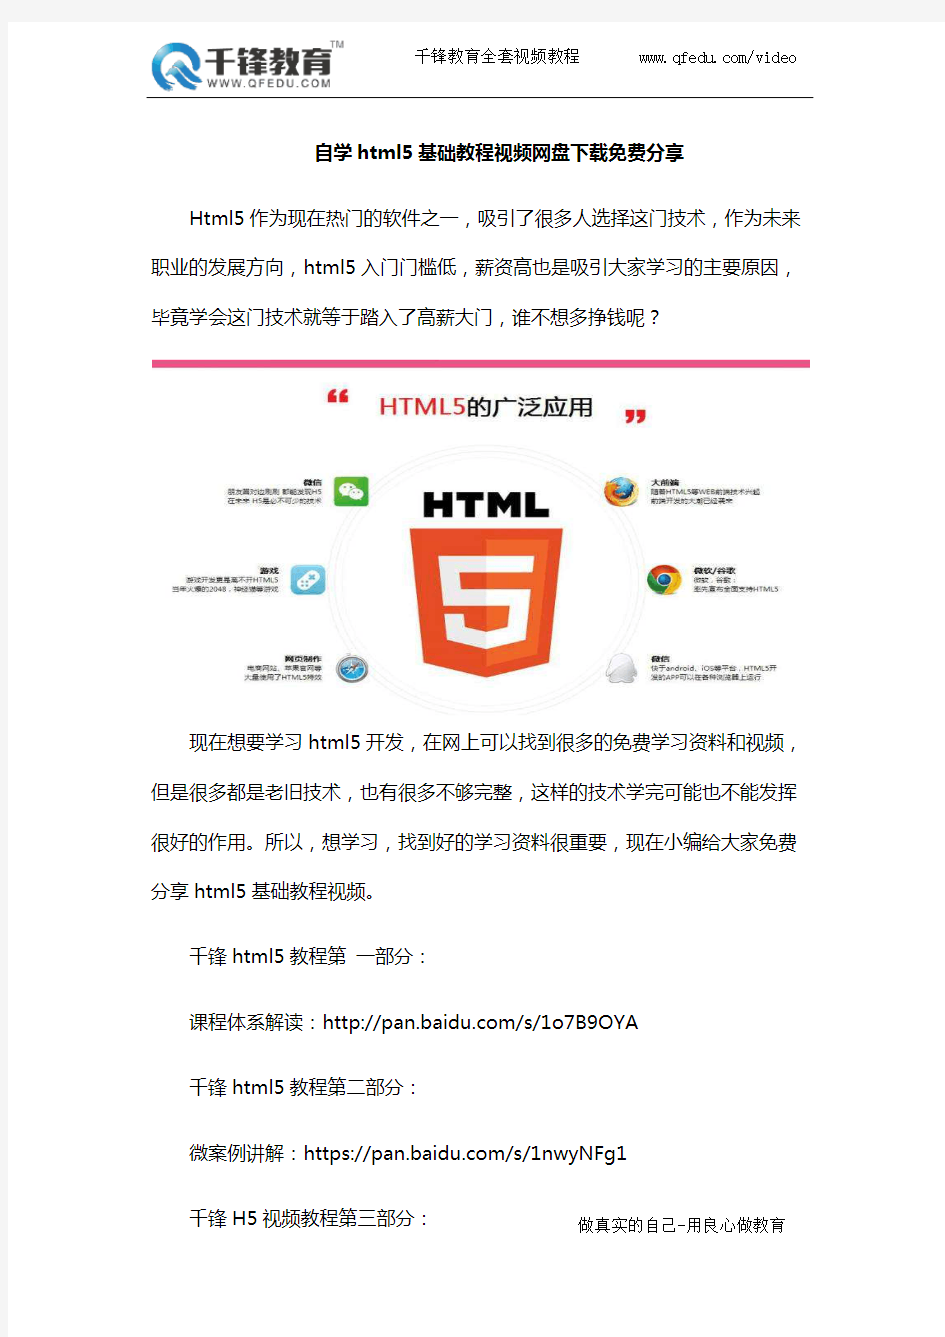 自学html5基础教程视频网盘下载免费分享